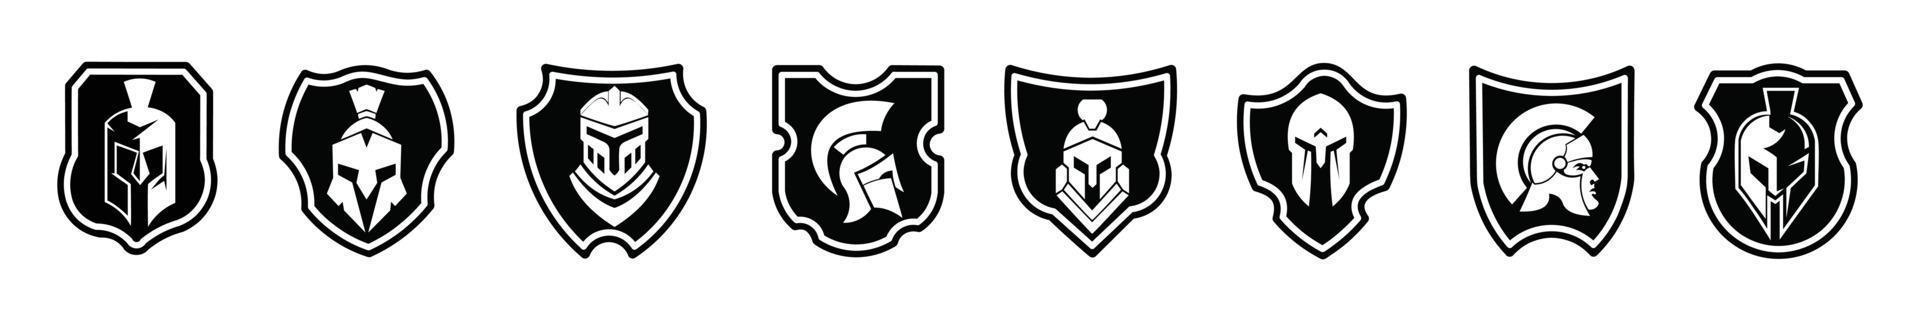 conjunto de ícones de logotipo preto de escudo espartano plano projeta ilustração vetorial em um fundo branco vetor